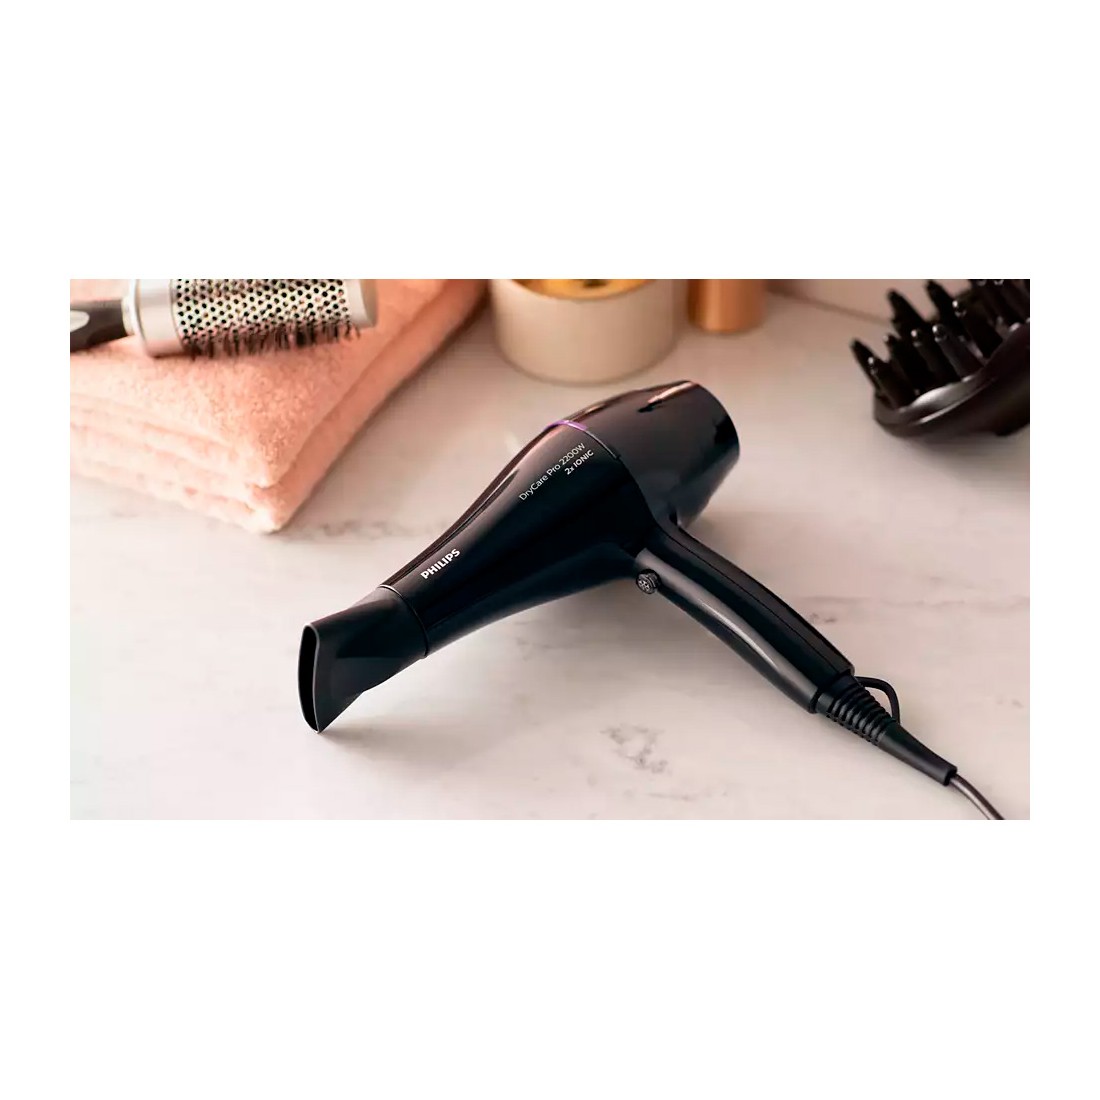 DryCare Secador de cabello profesional BHD274/00